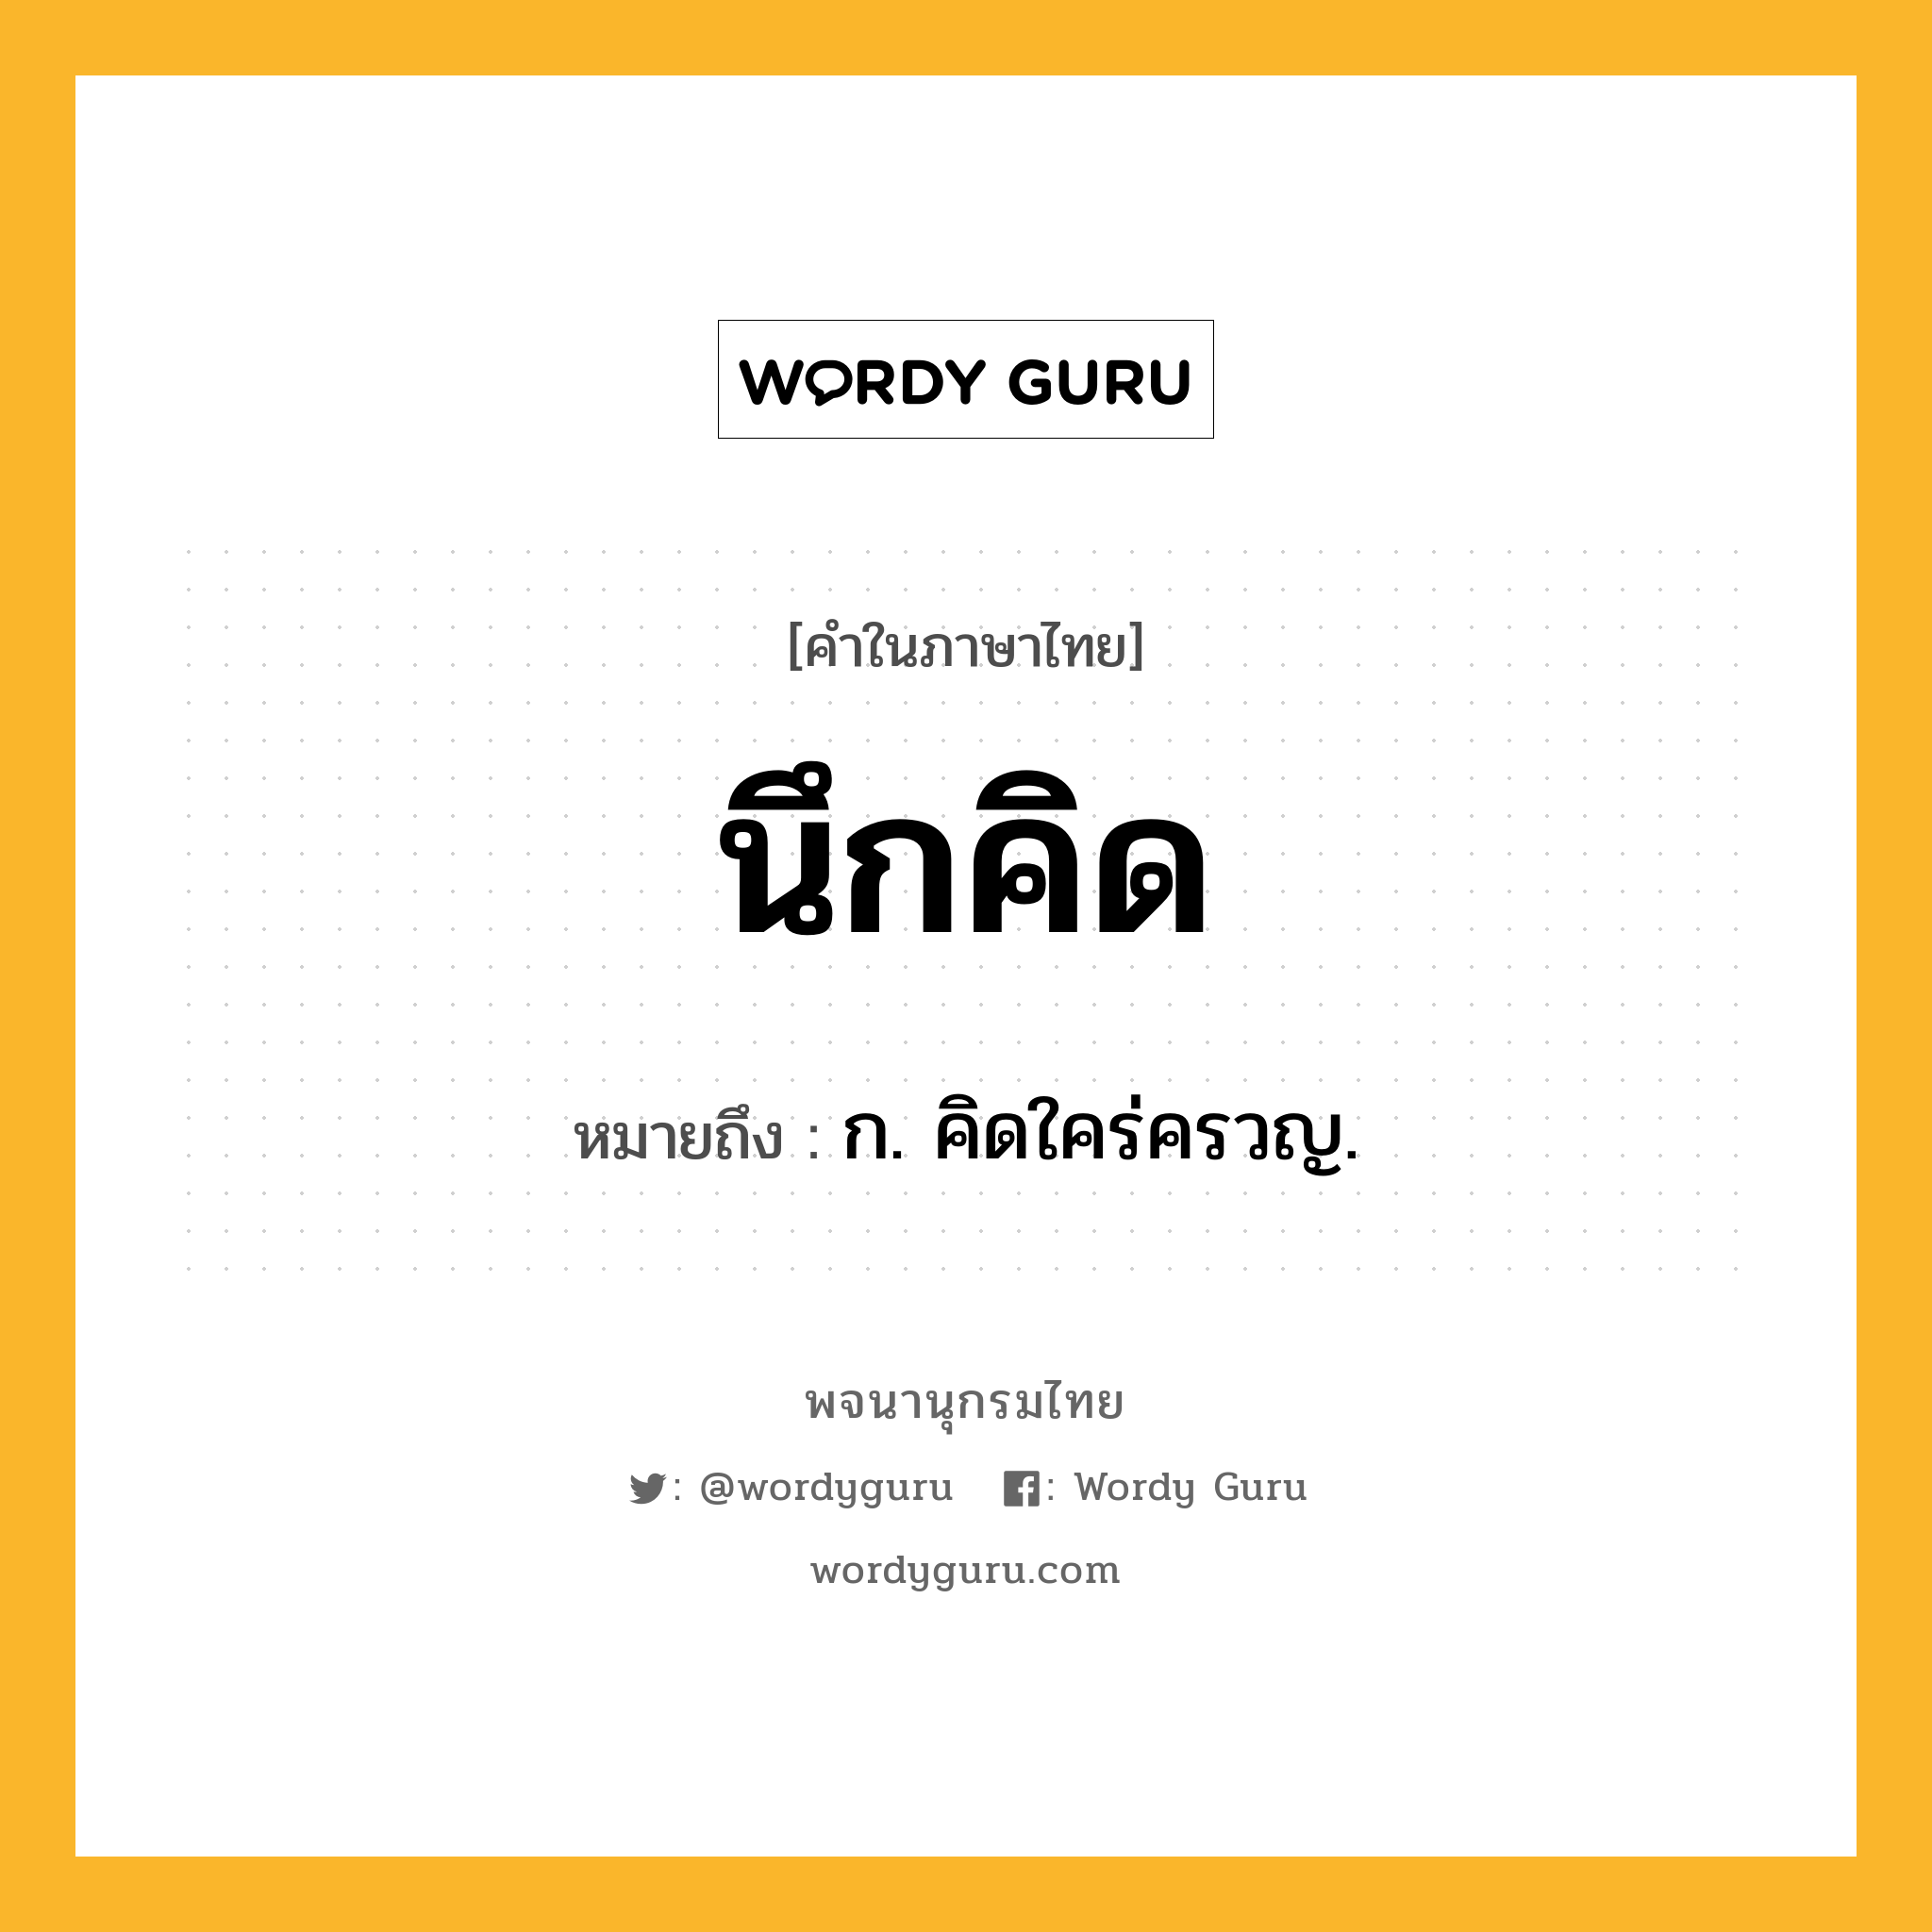 นึกคิด ความหมาย หมายถึงอะไร?, คำในภาษาไทย นึกคิด หมายถึง ก. คิดใคร่ครวญ.